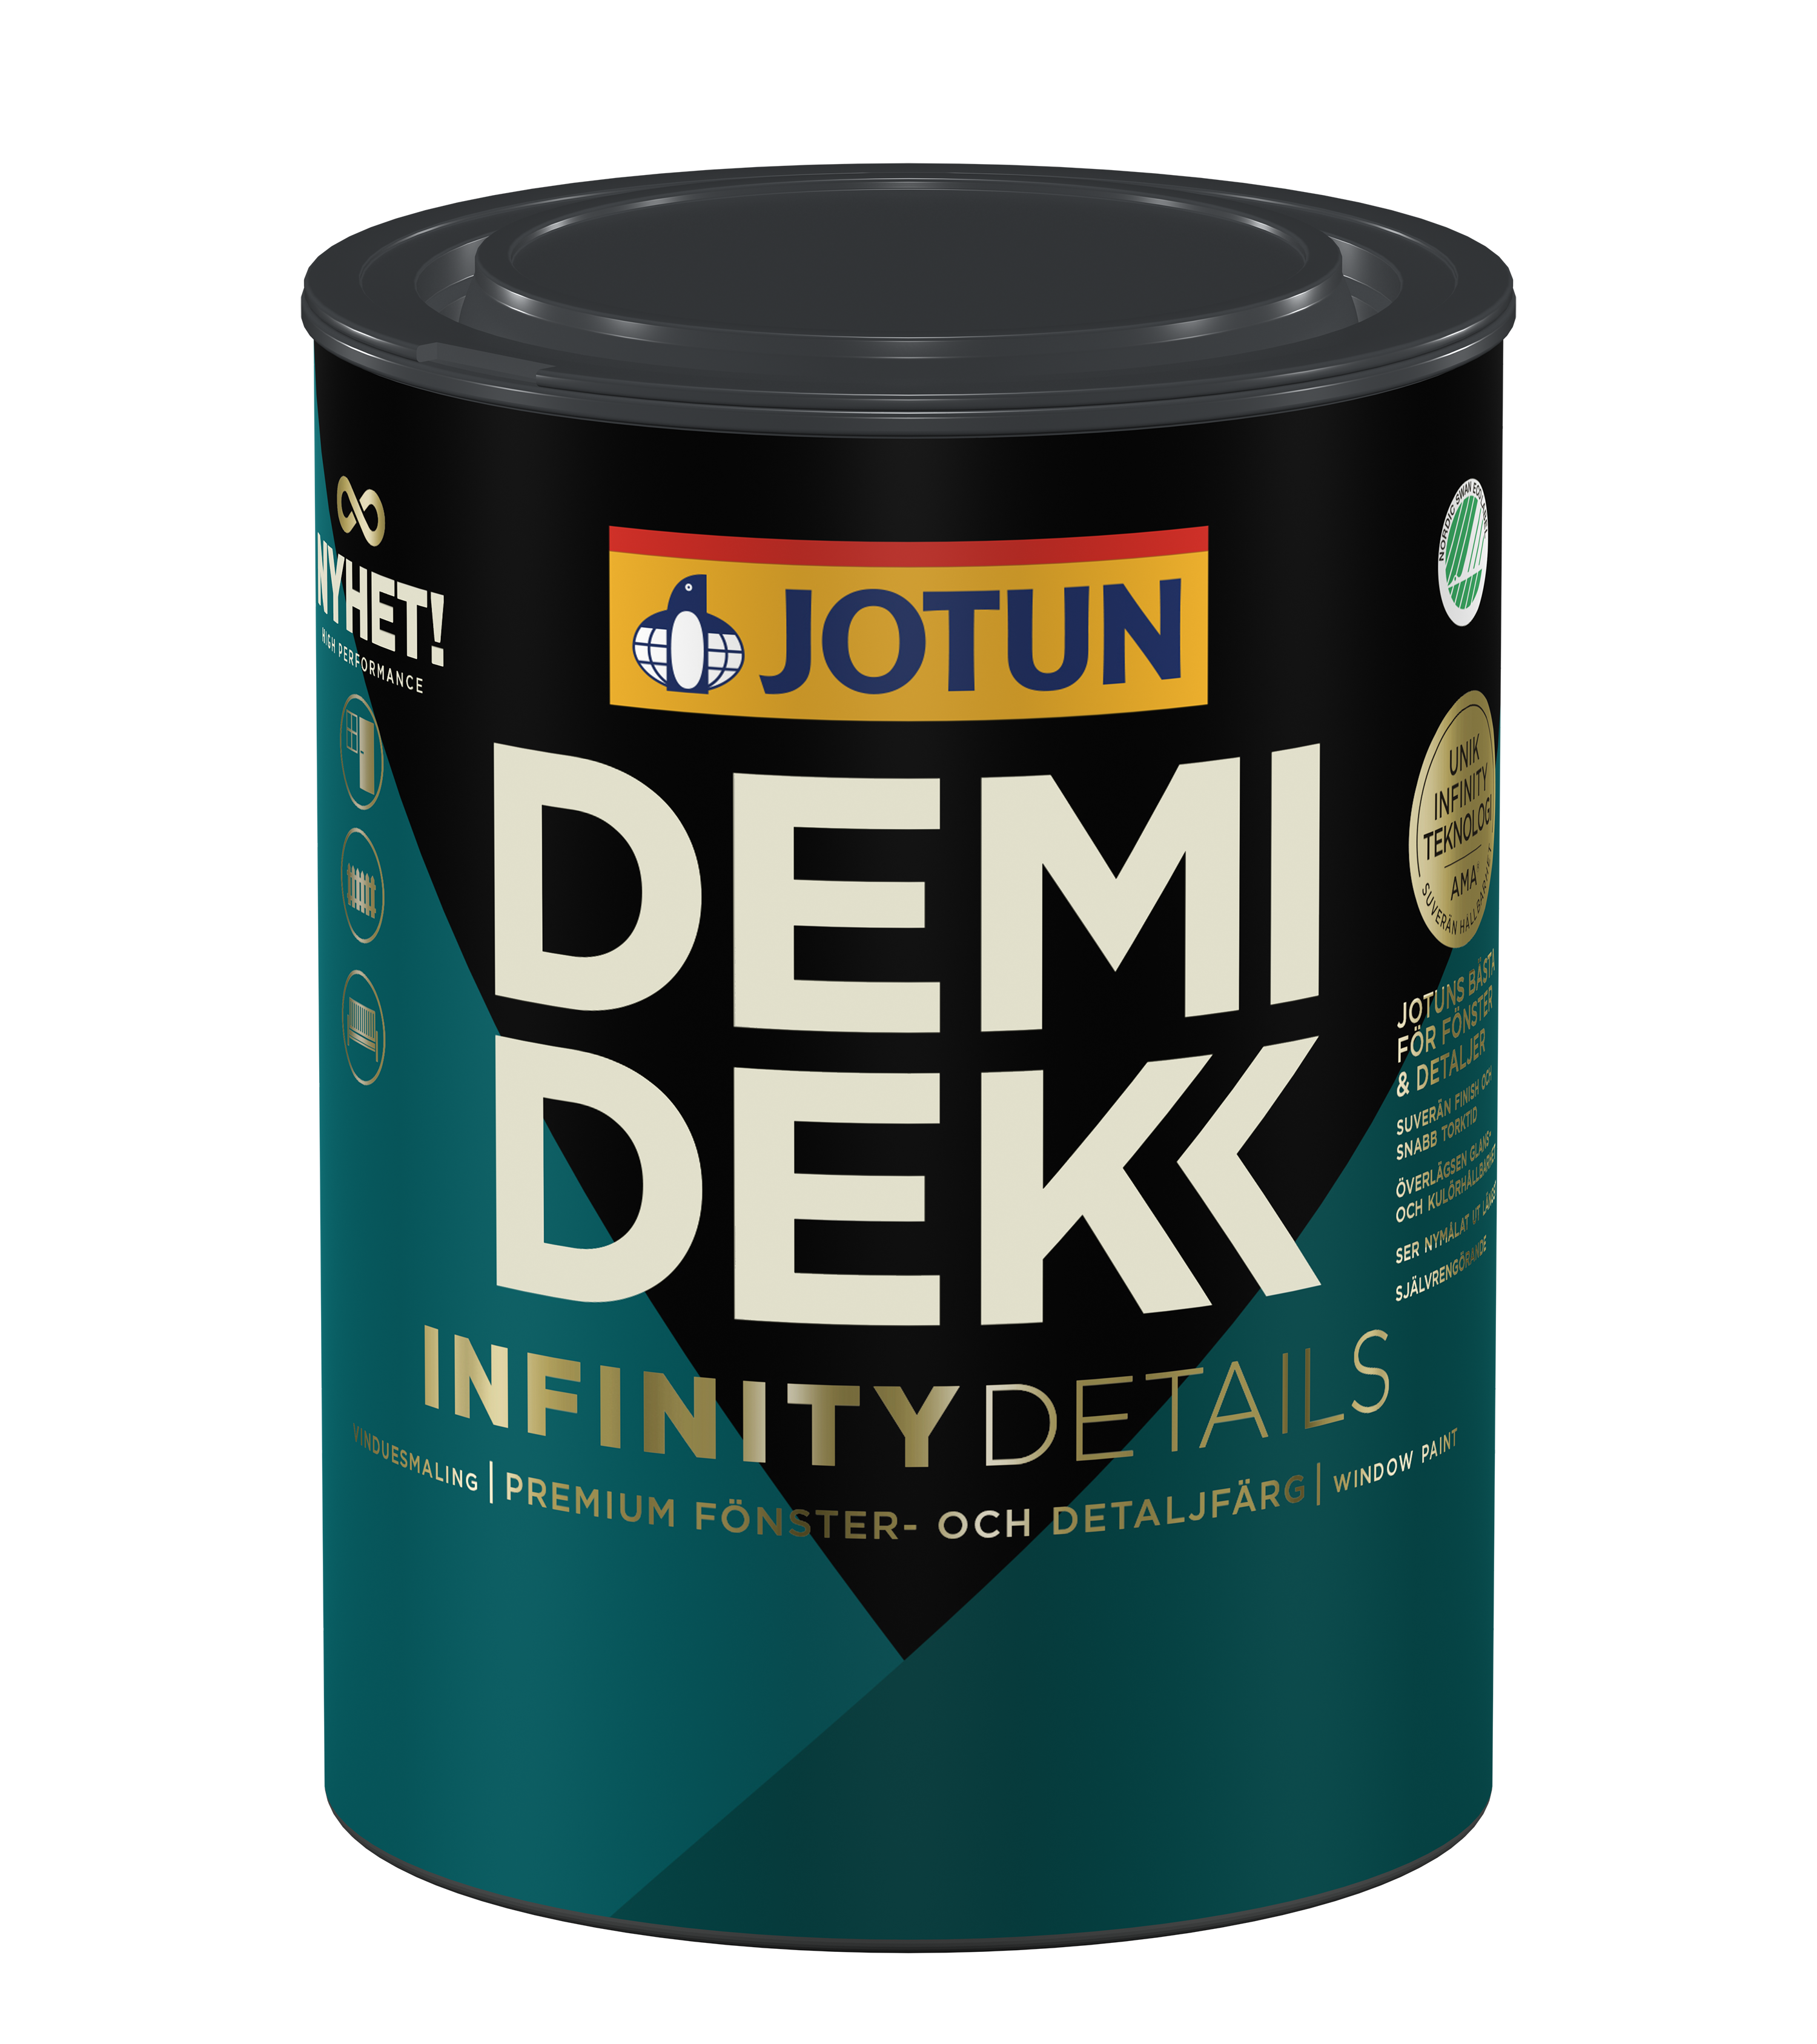 Jotun Demidekk Infinity Details